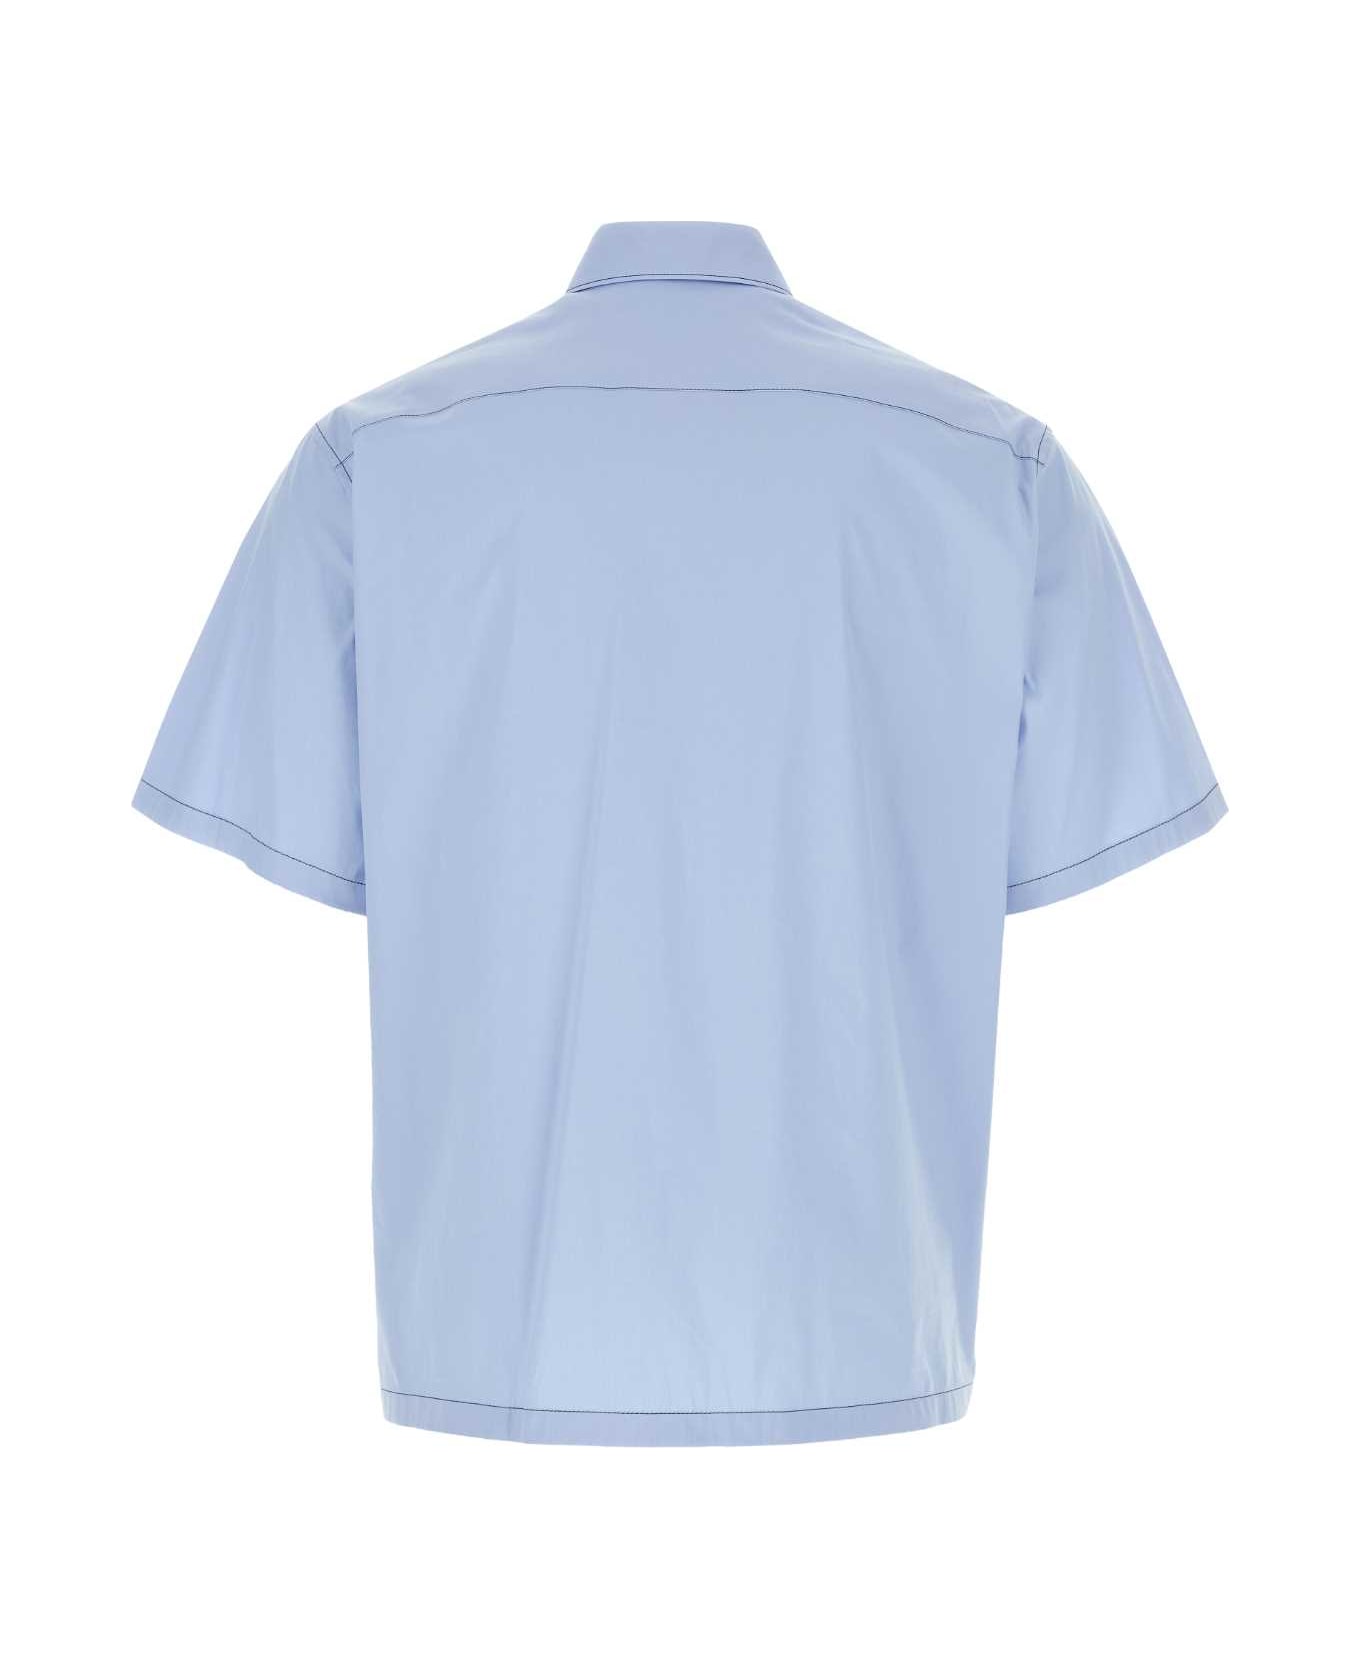 Prada Light Blue Stretch Poplin Shirt - CIELO